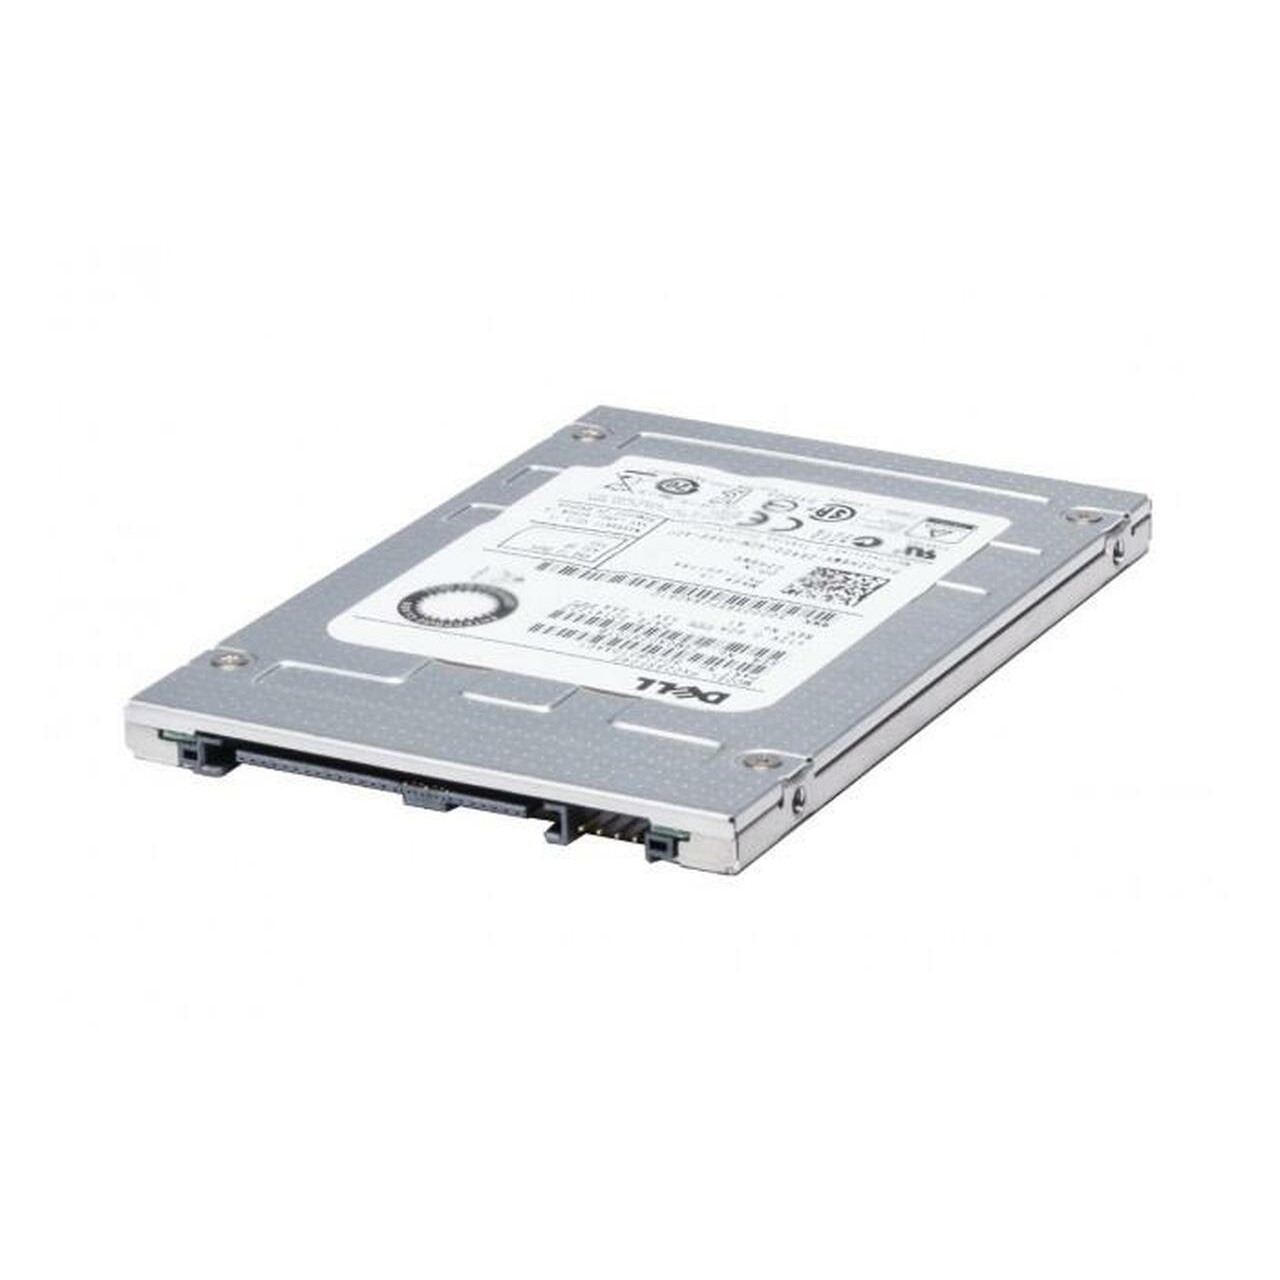 DELL 14025DRI-480G-NPOS 480GB 2.5" SATA SERVER SSD